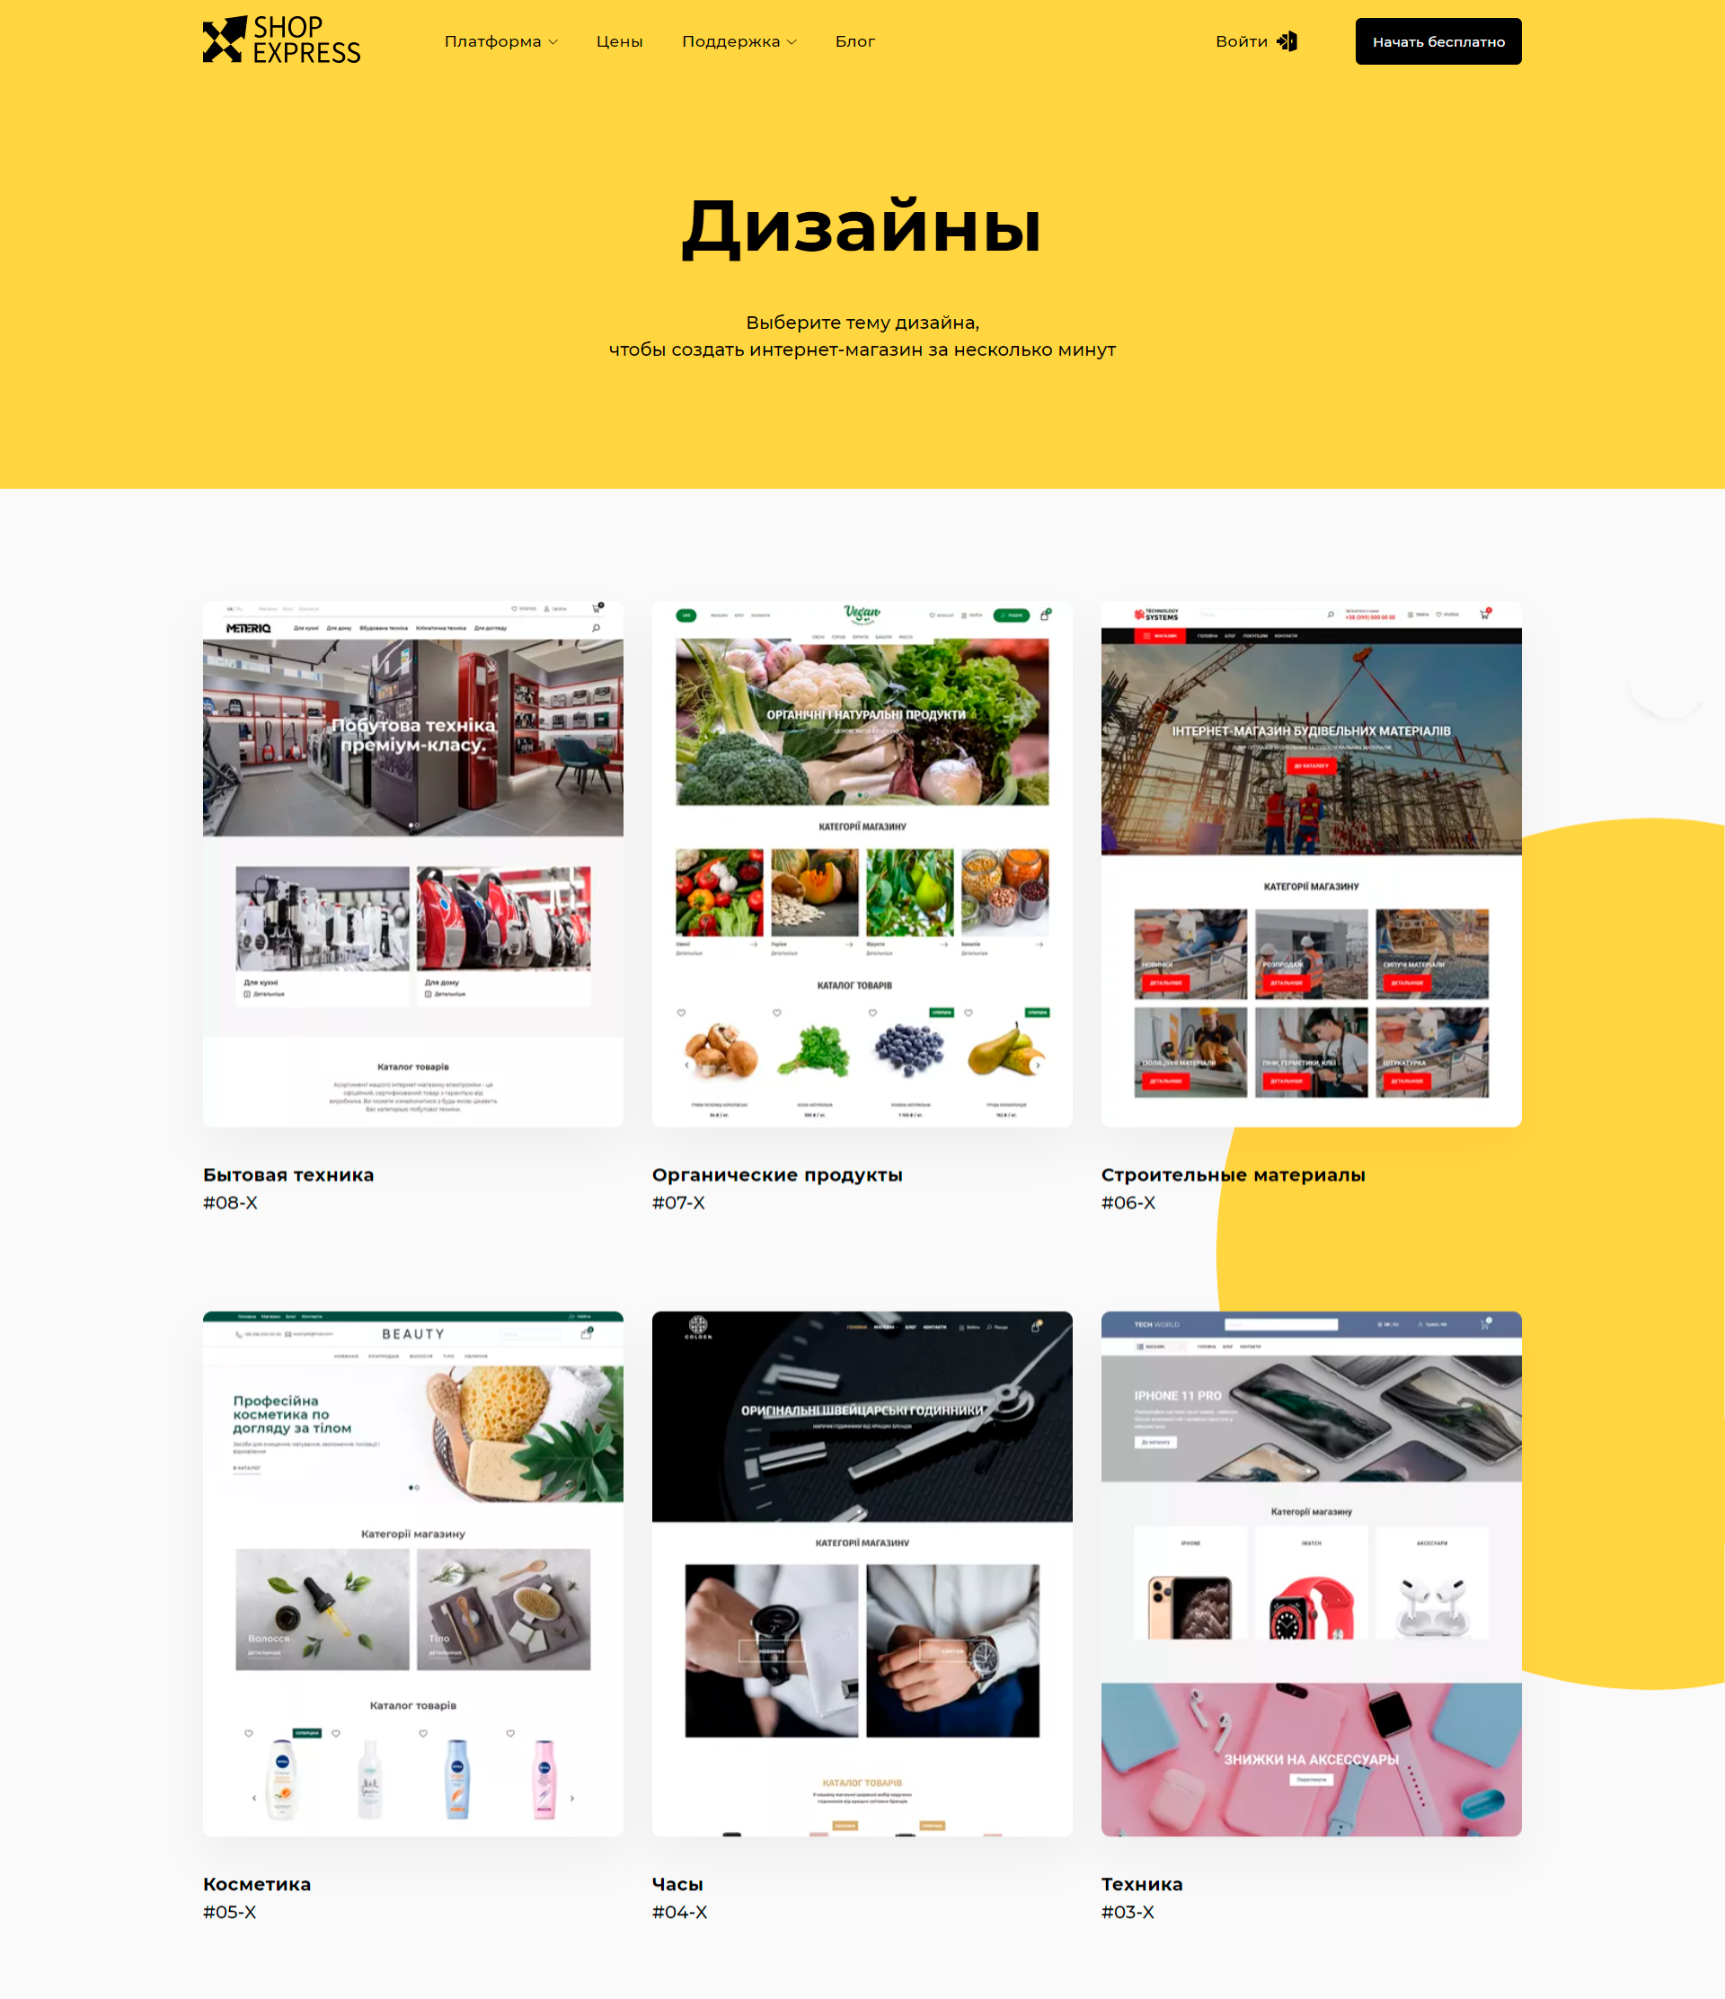 Сайт экспресс магазин на русском